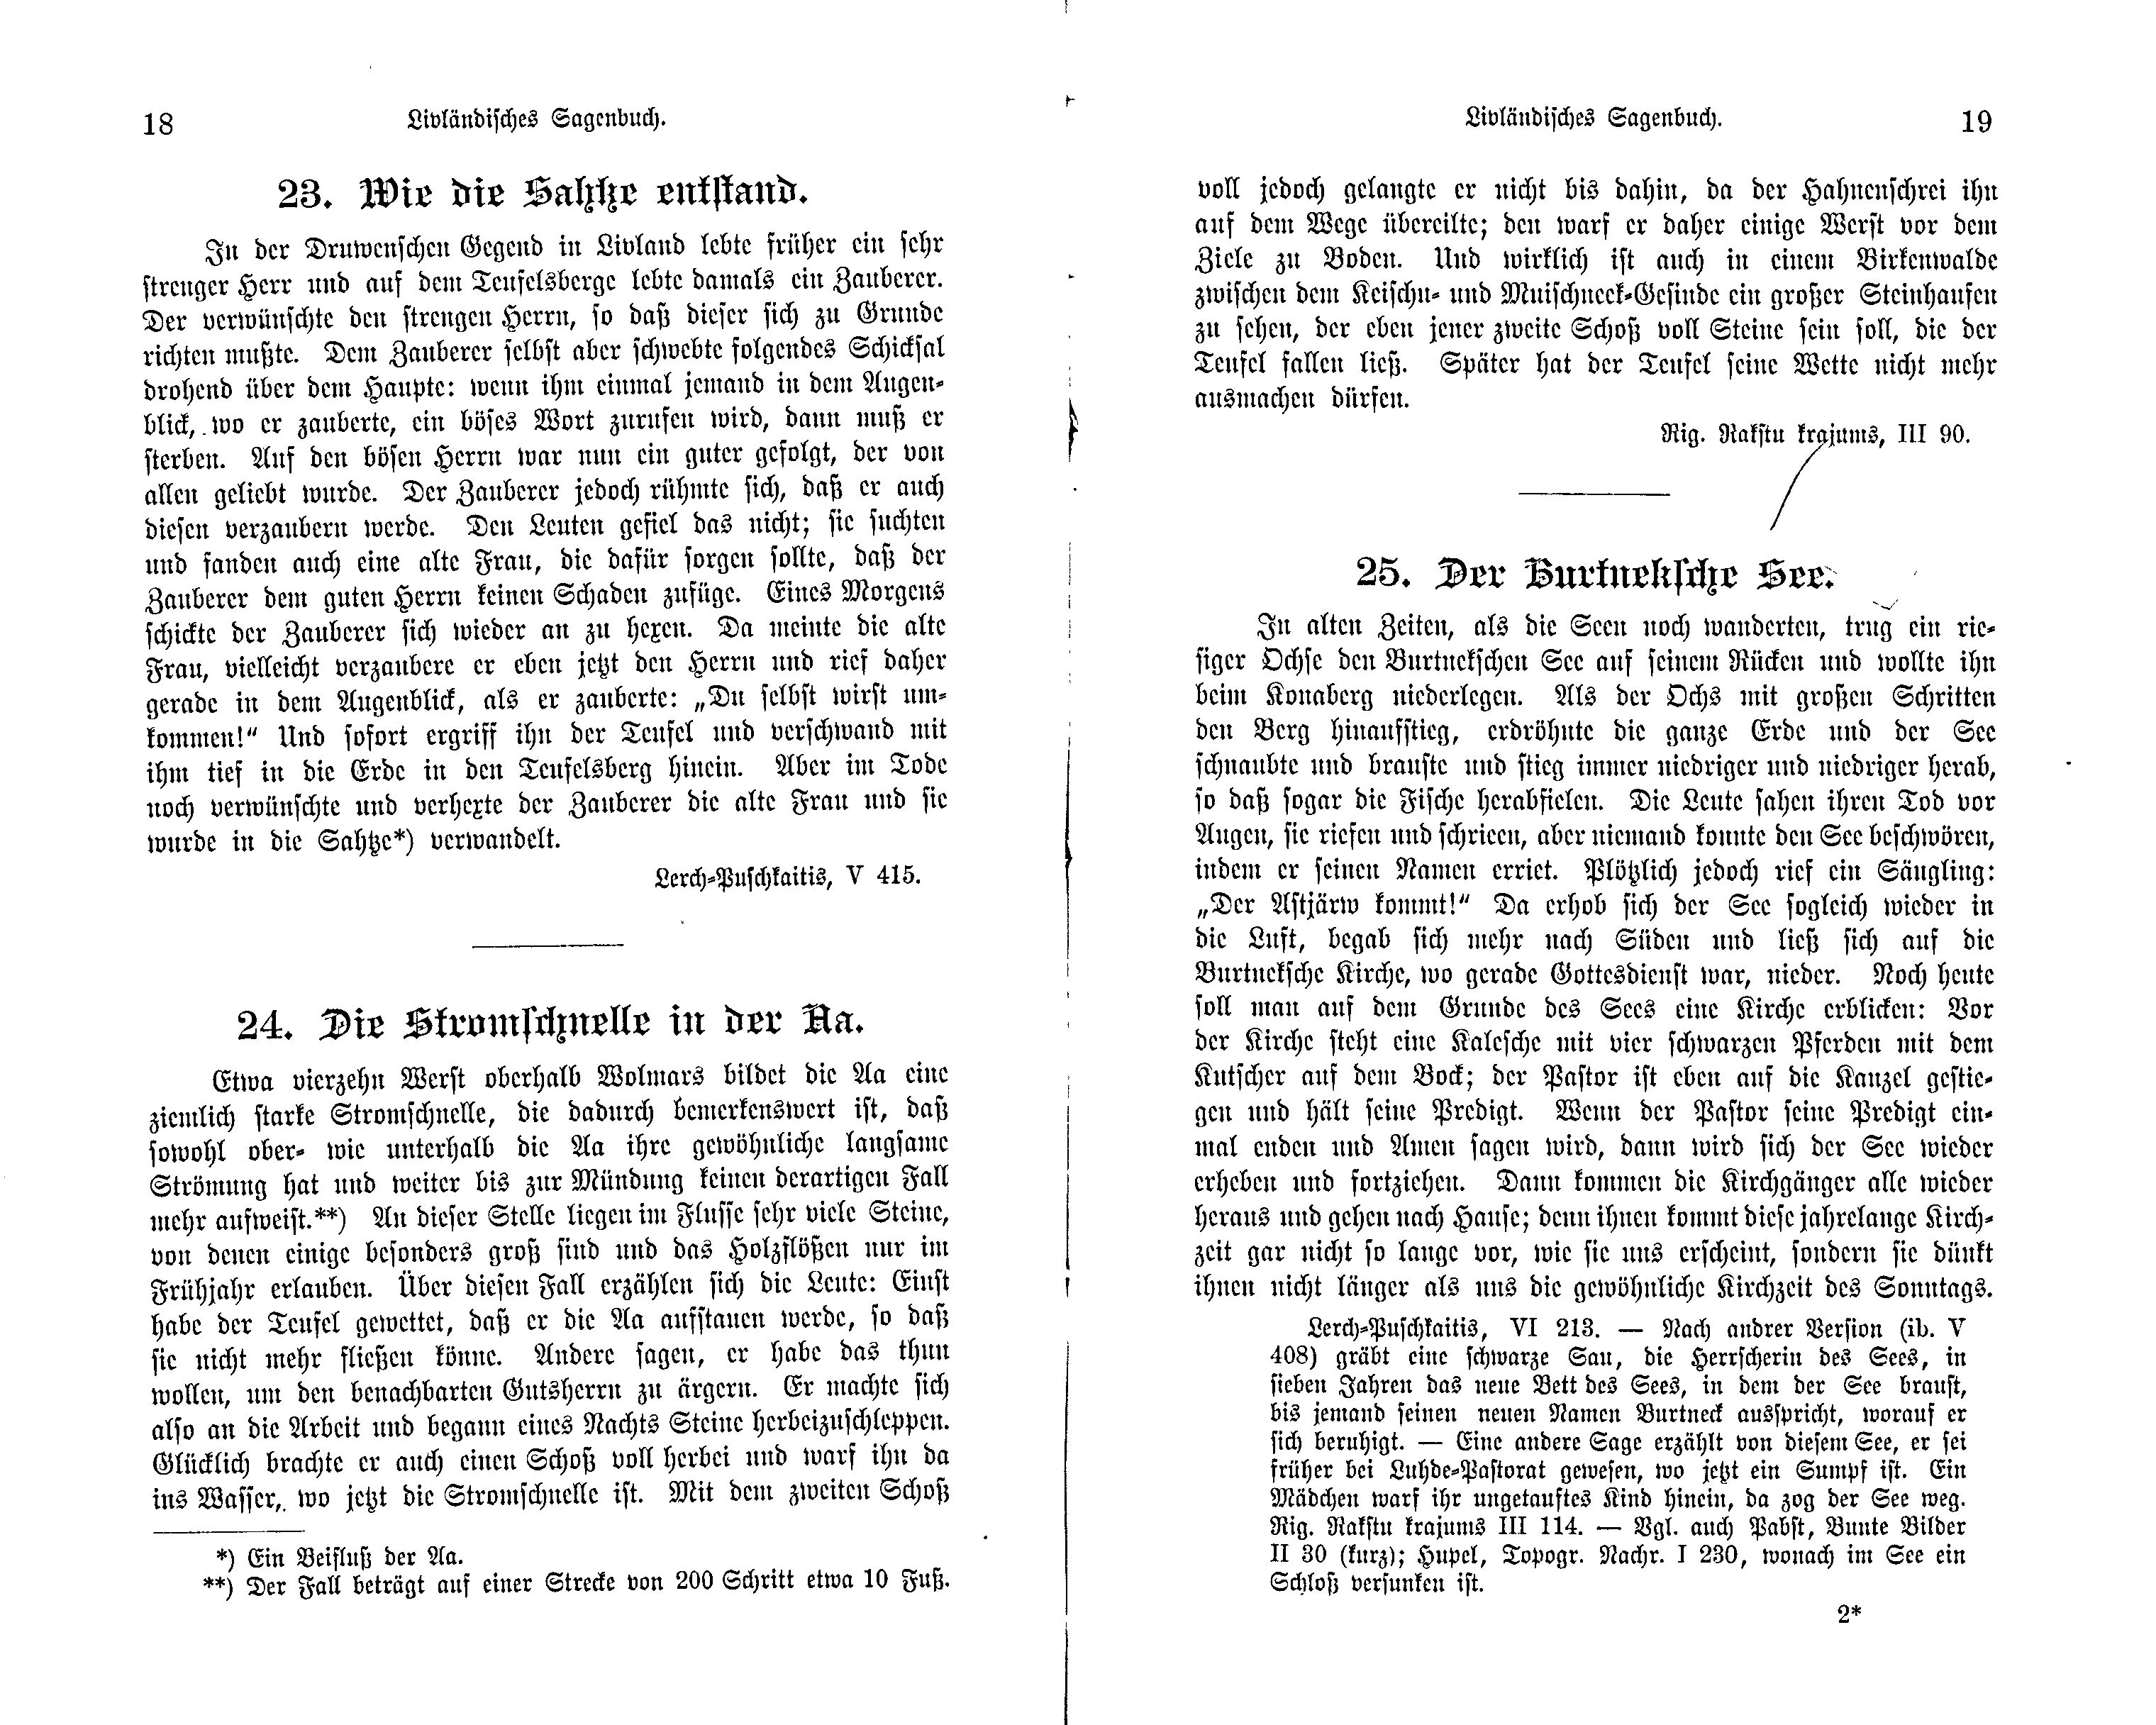 Die Stromschnelle in der Aa (1897) | 1. (18-19) Haupttext